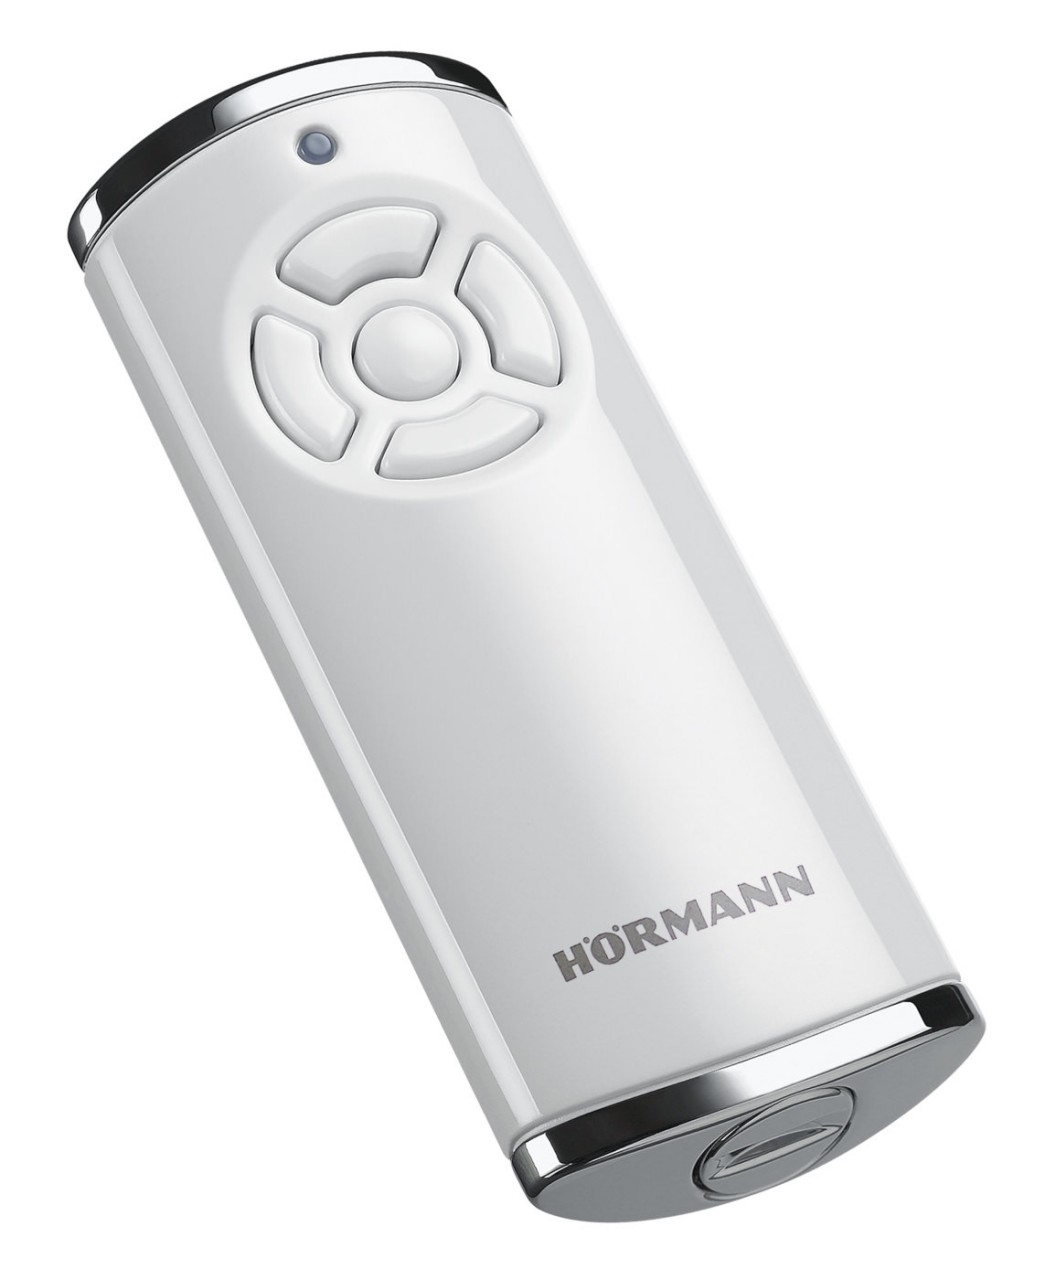 Hormann handset HS 5 BiSecur with 868 MHz in black